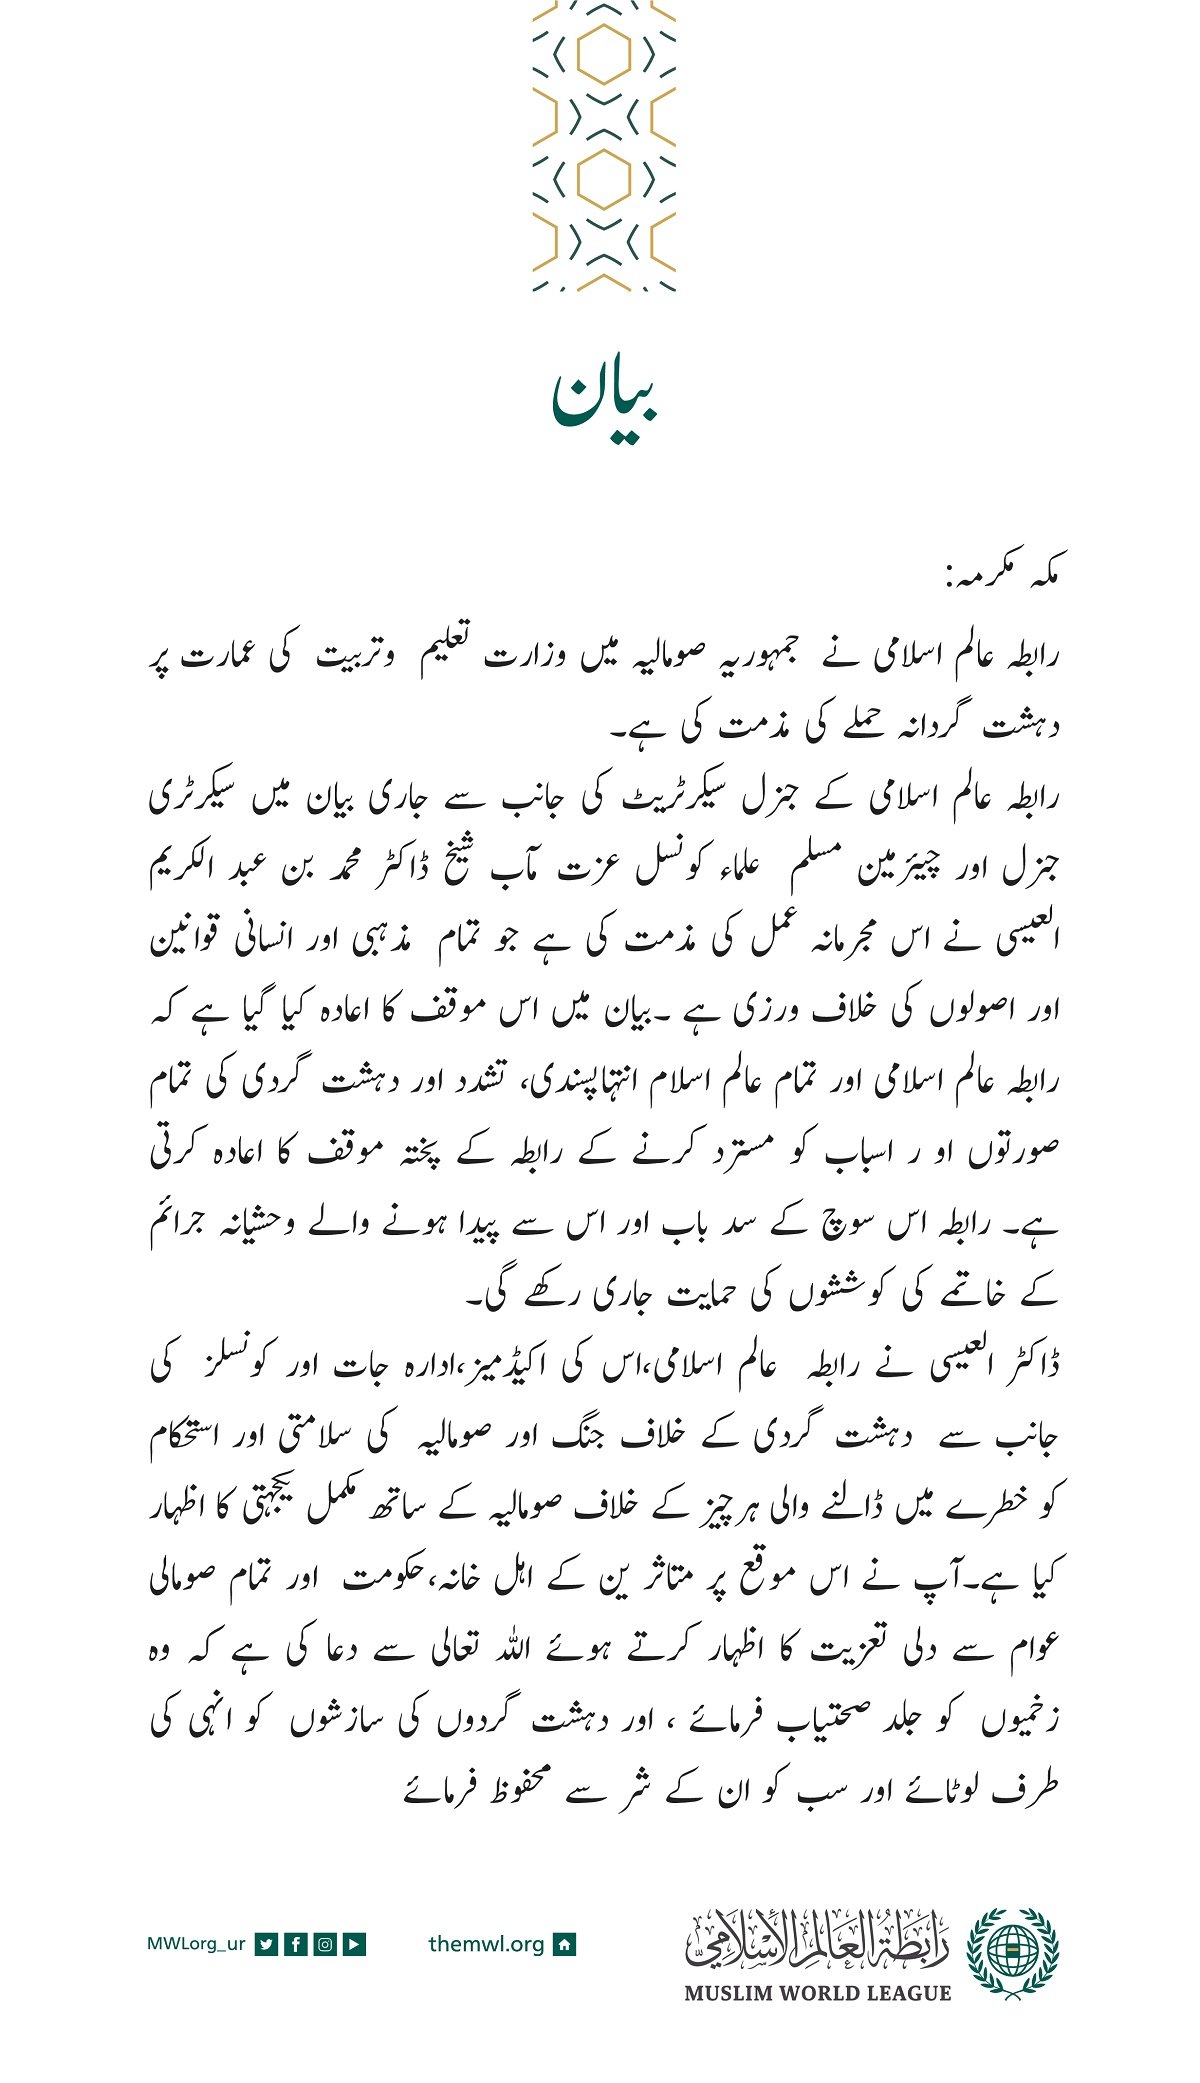 رابطہ عالم اسلامی کی جانب سے جاری بیان: